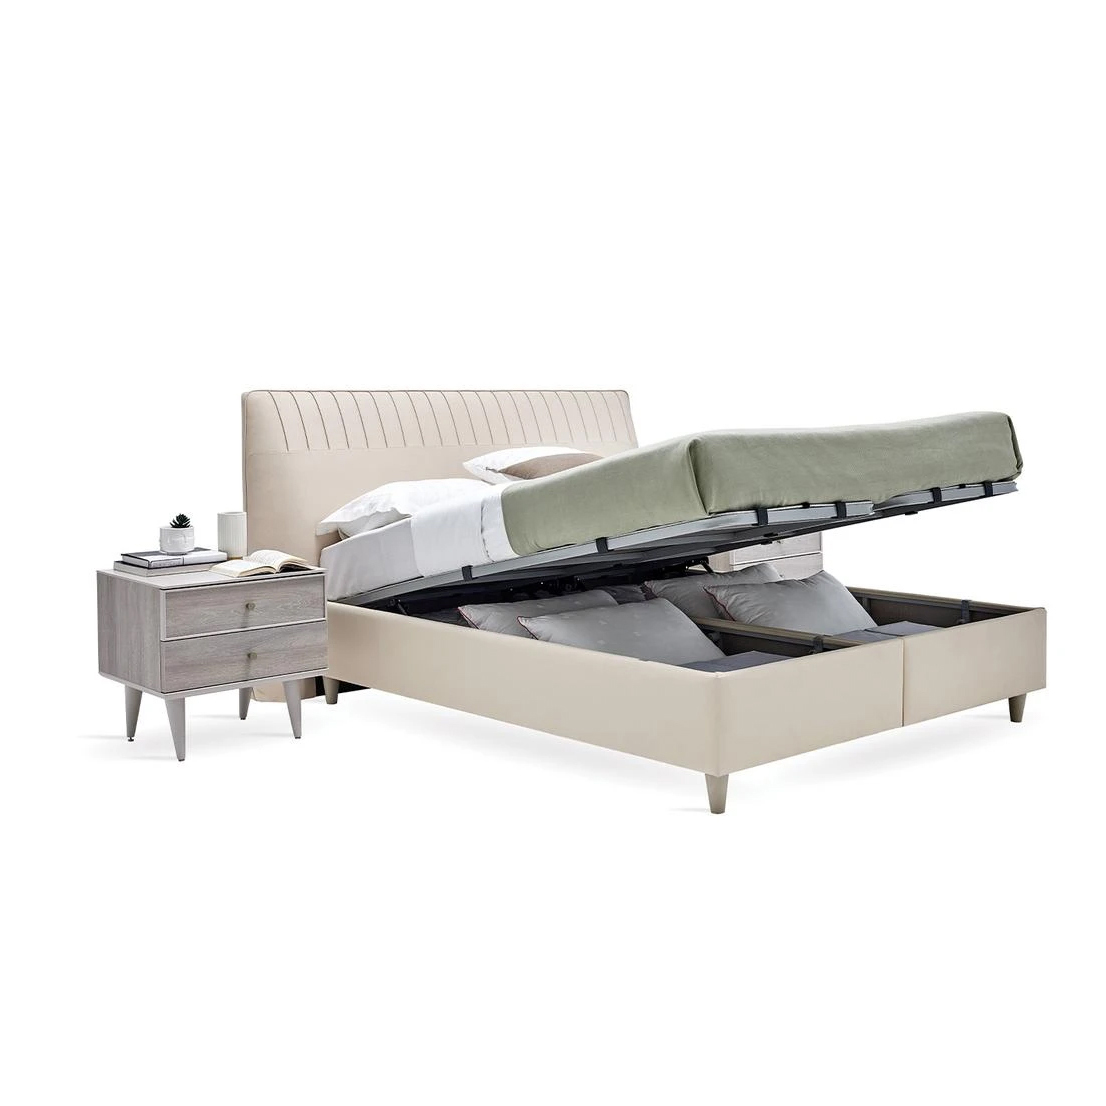 Кровать Enza Home Basel, 160х200 см, с подъемным механизмом, кремовый 3001-K1-52102 (EH59531+EH59550)EH59531+EH59550